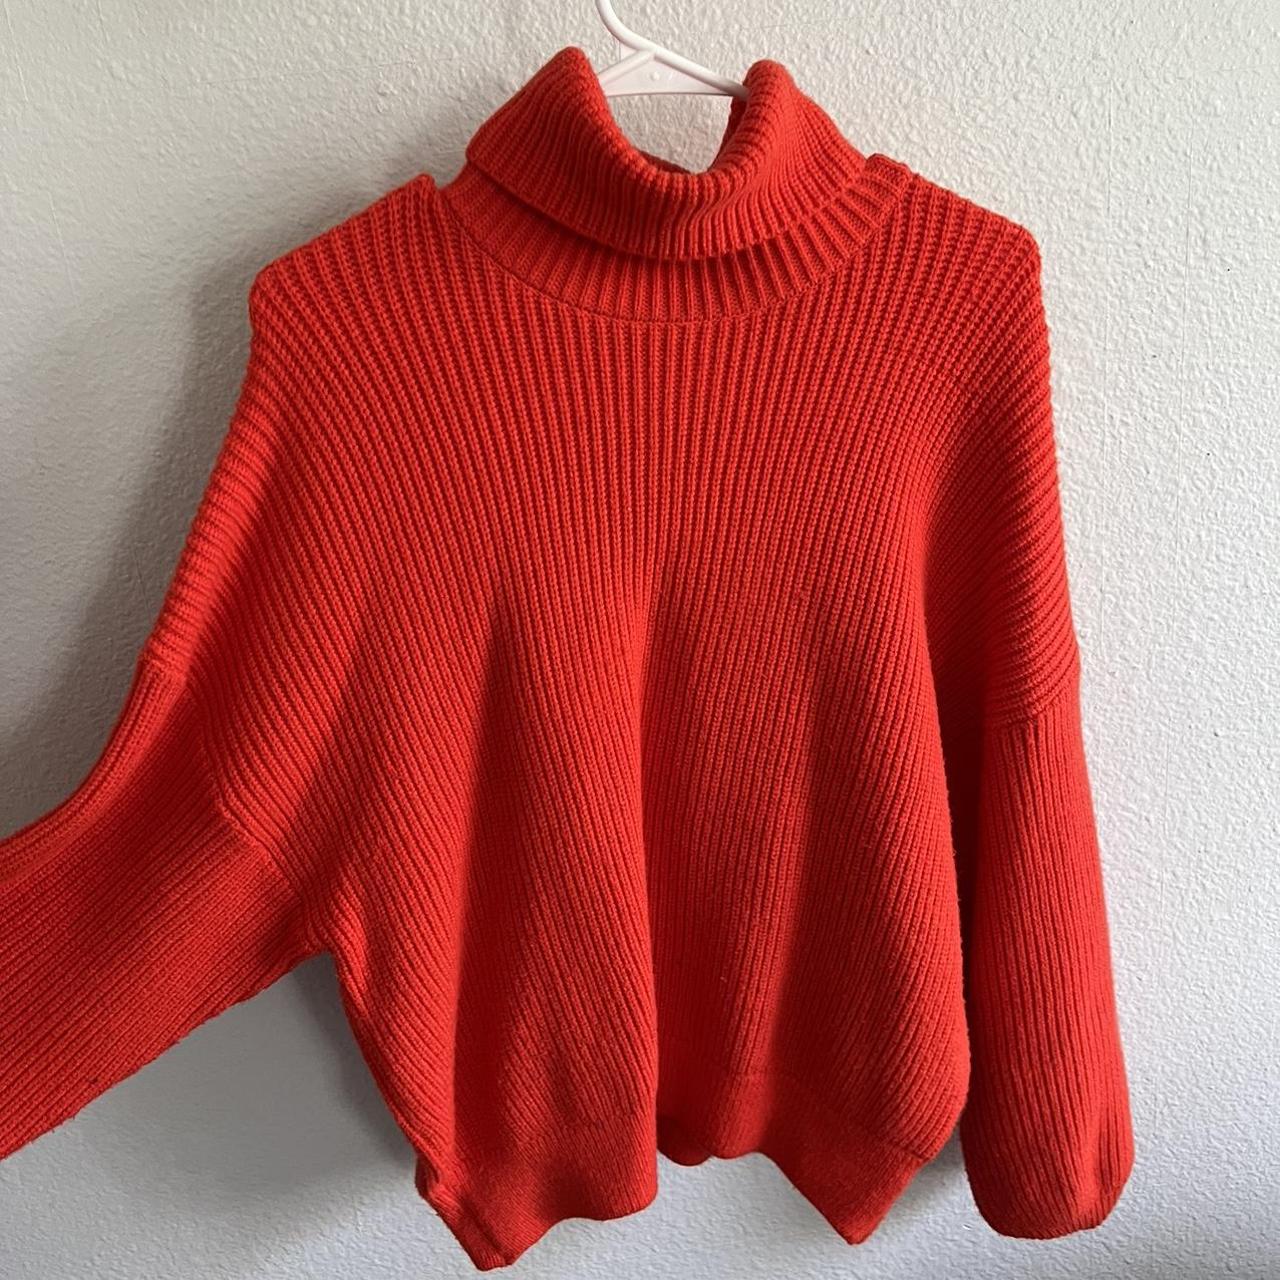 Bright orange/red turtleneck Sweater Zara, size... - Depop